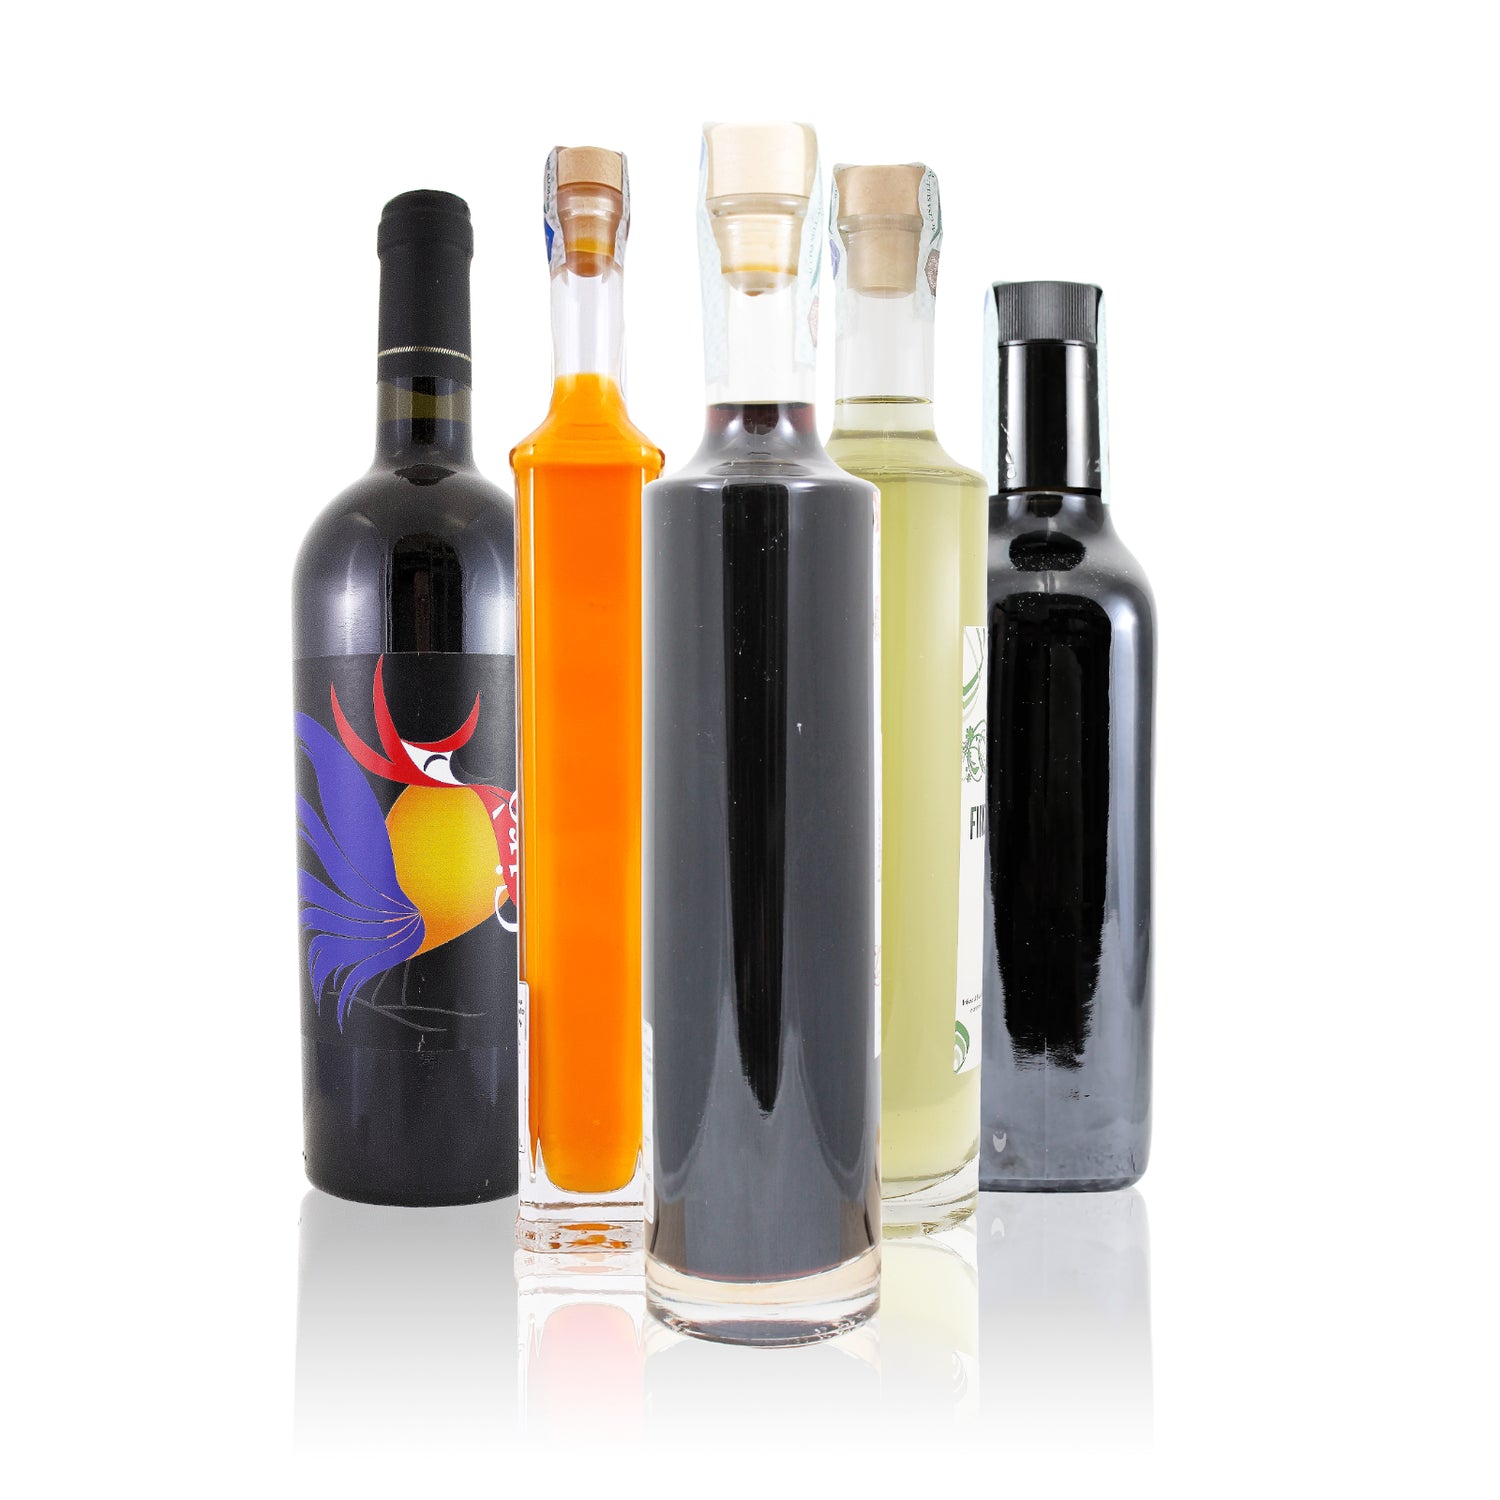 Vini, liquori, creme liquorose made in Calabria con materia prima Calabrese come Cedro, bergamotto, liquirizia, peperoncino e cipolla